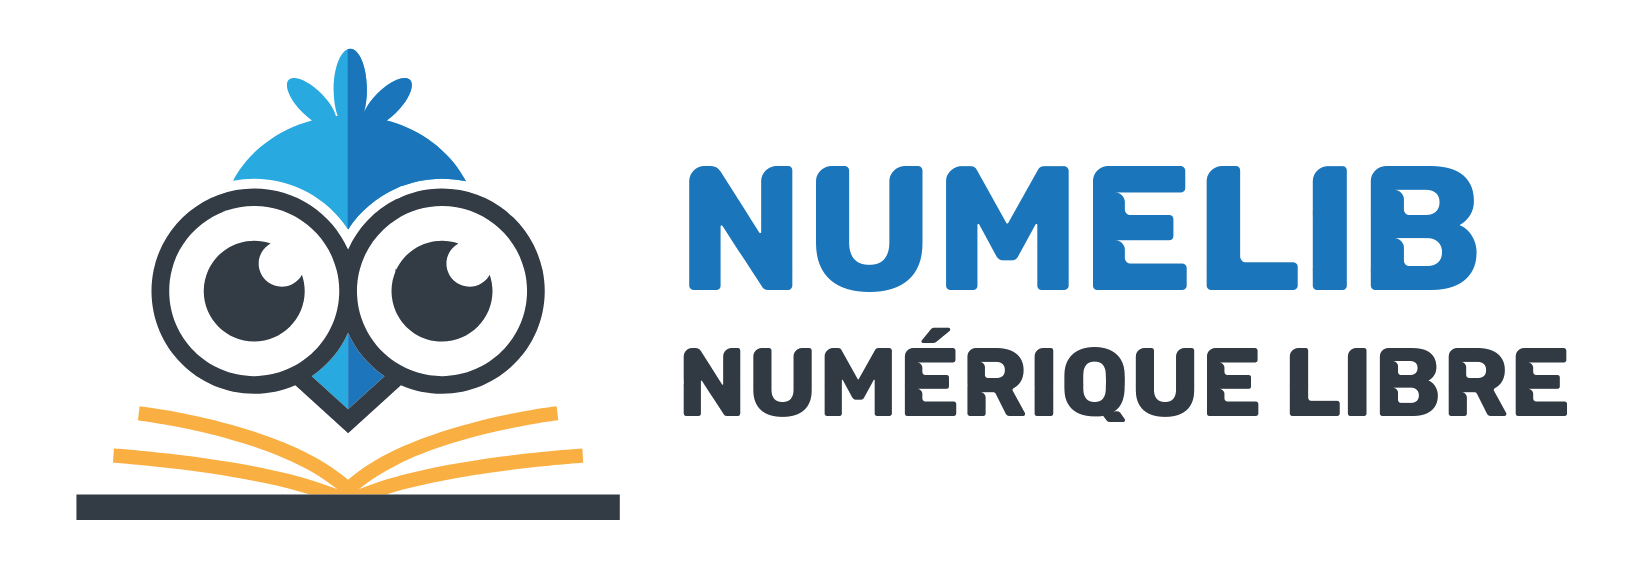 Numelib – Numérique Libre